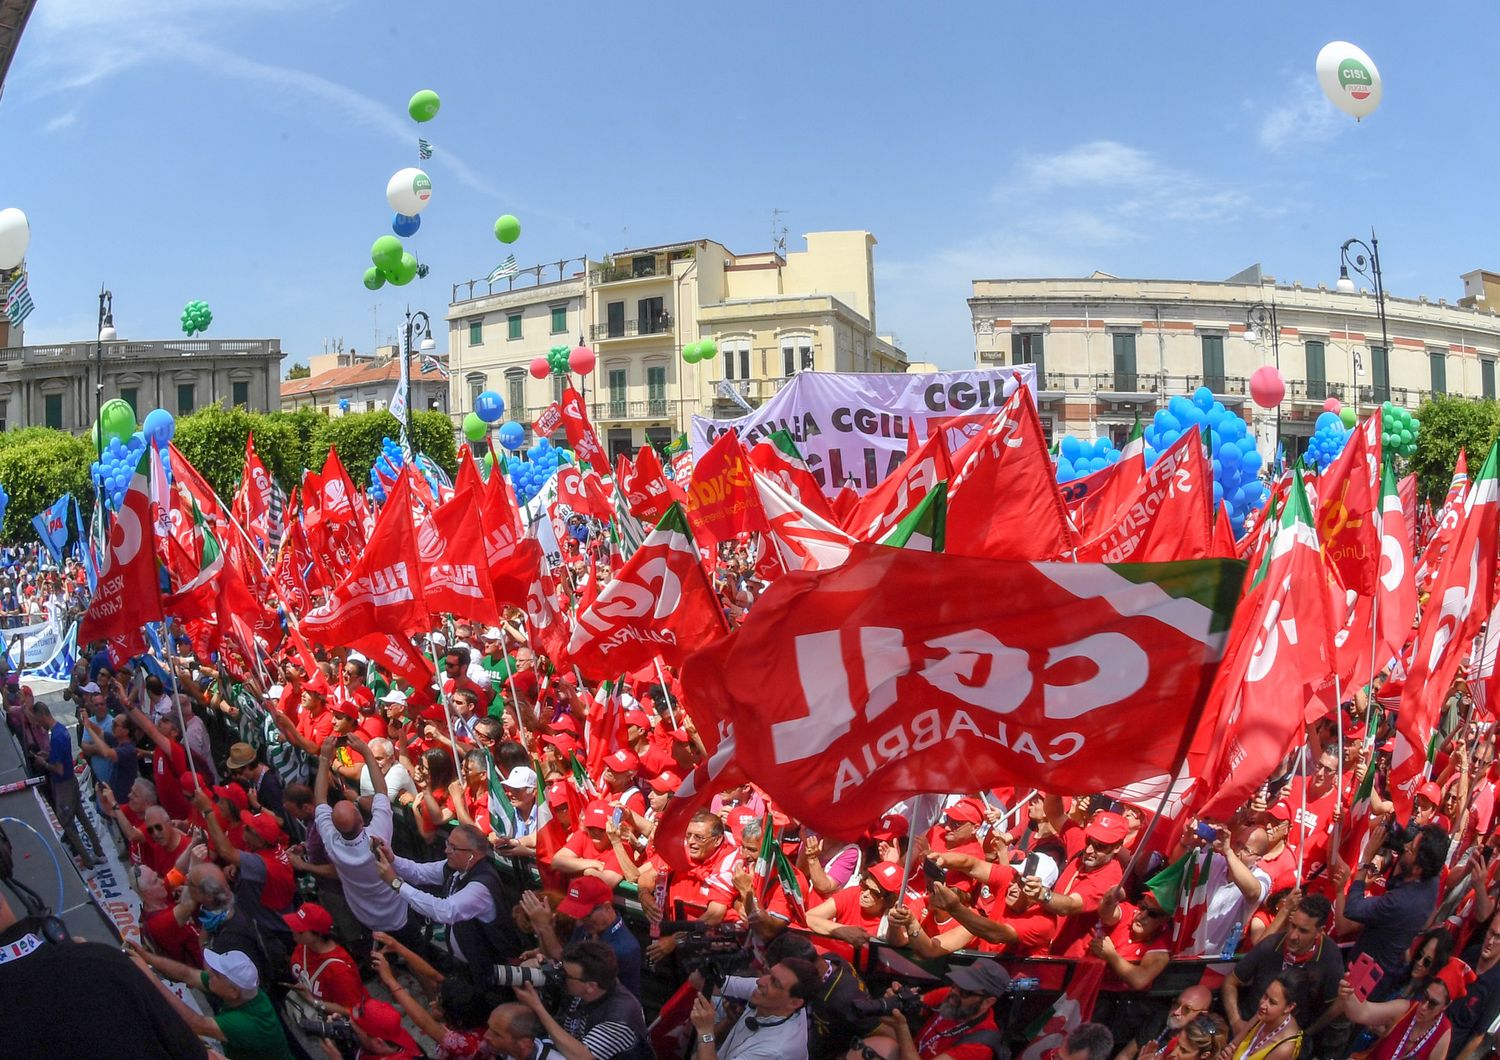 La manifestazione di Cgil, Cisl e Uil a Reggio Calabria